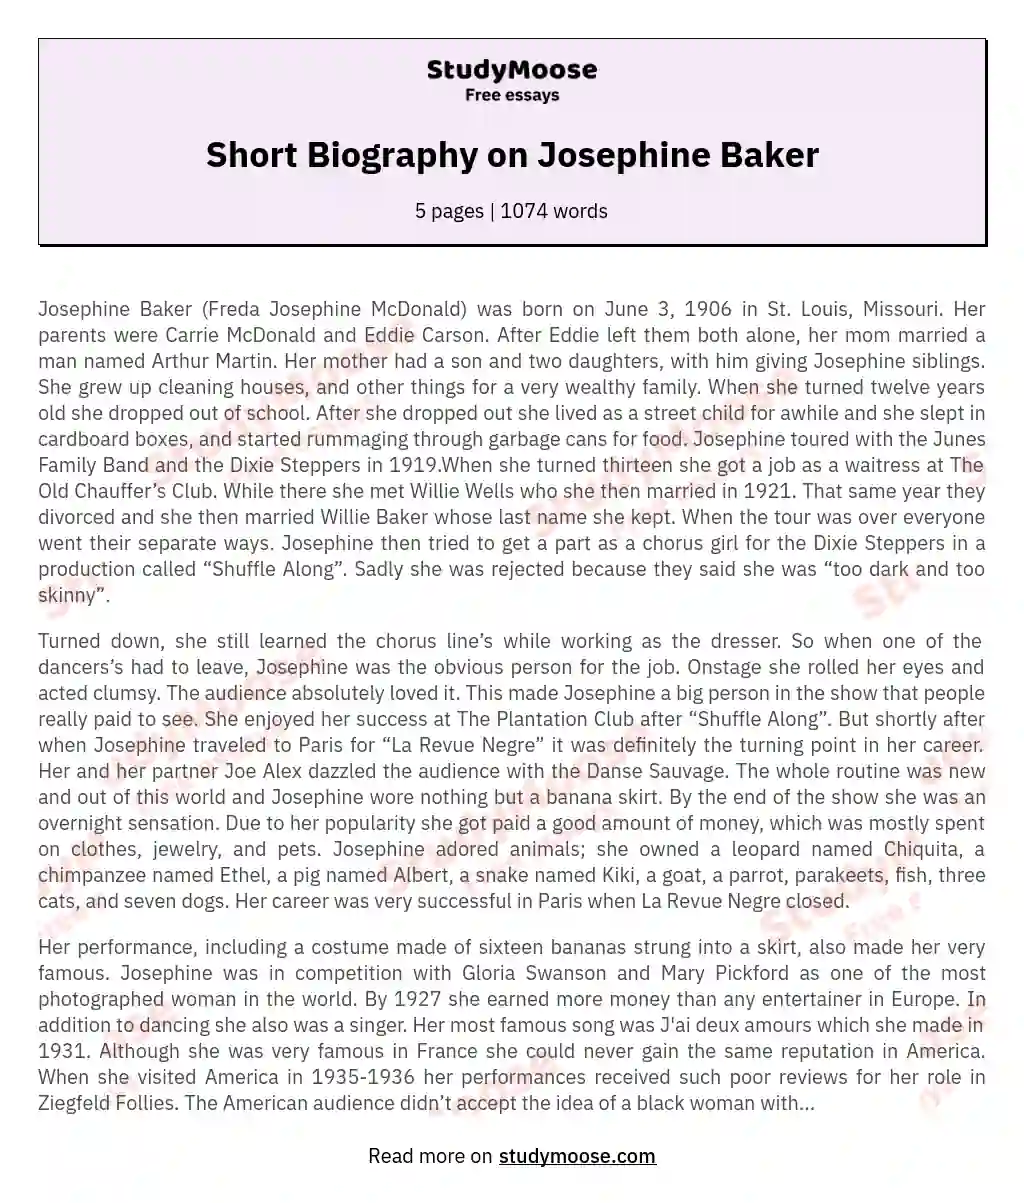 Short Biography on Josephine Baker essay